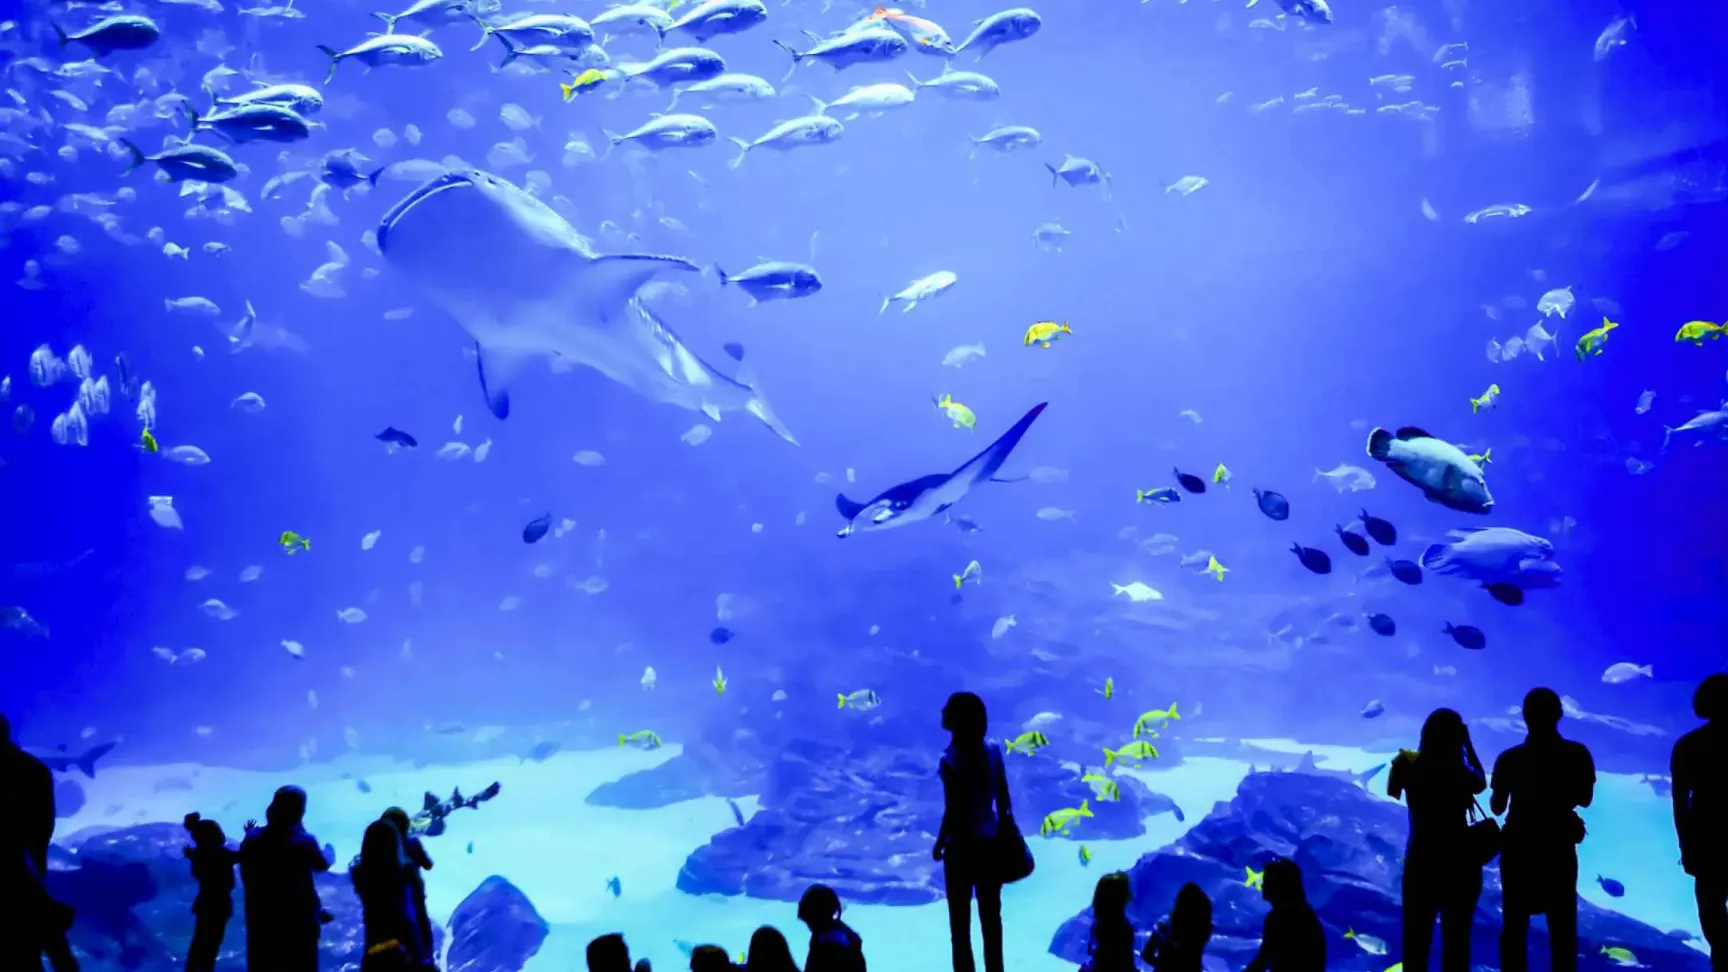 Grand Aquarium